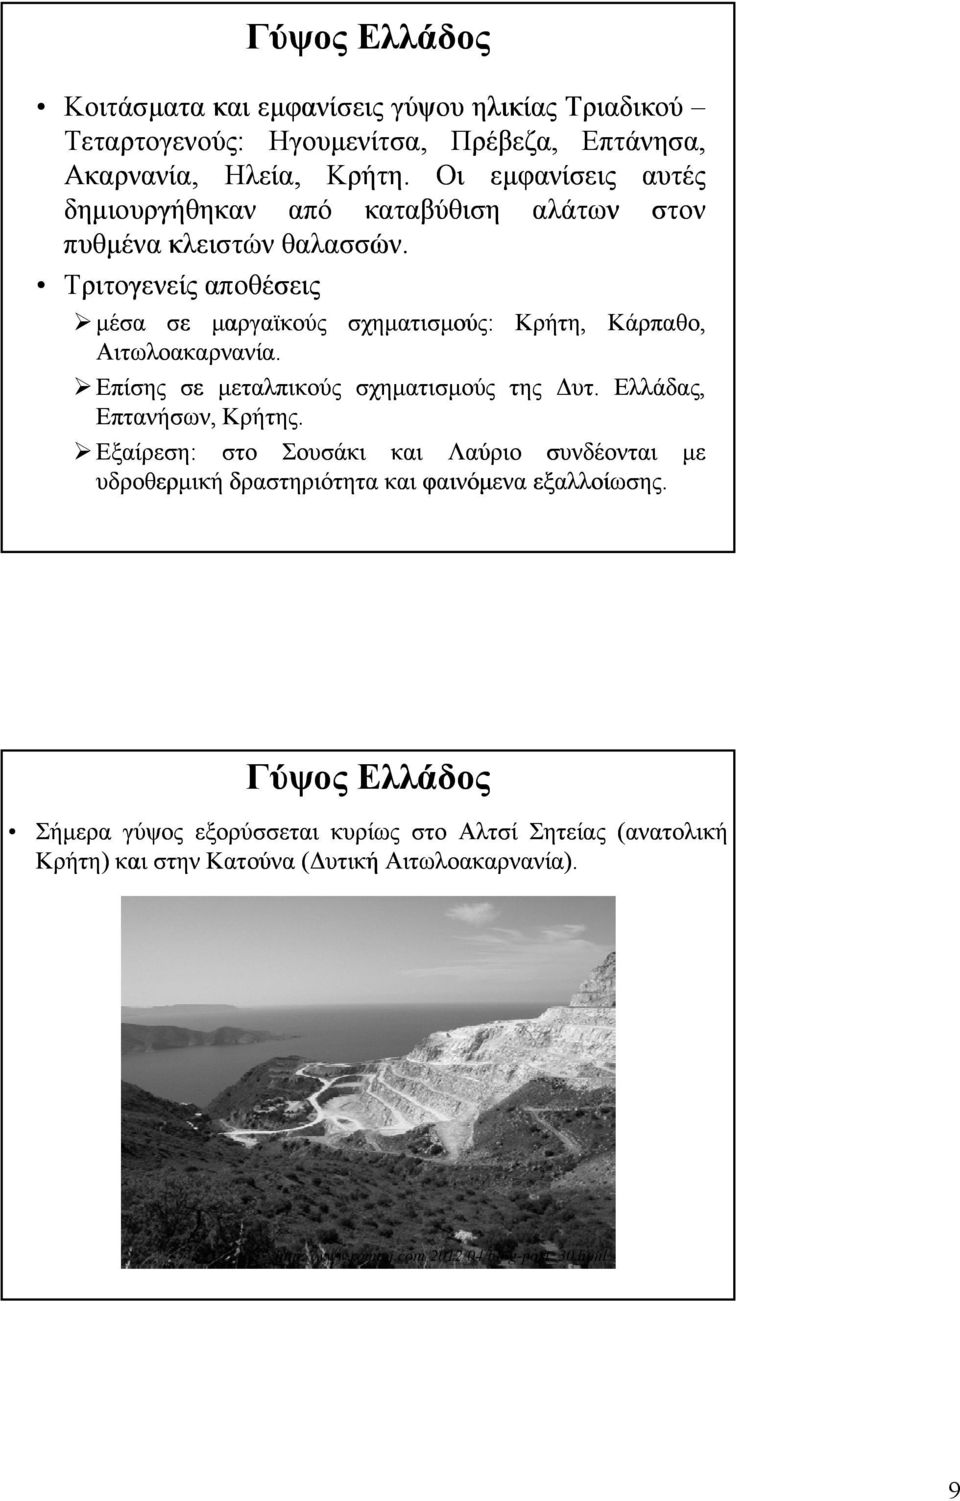 Τριτογενείς αποθέσεις μέσα σε μαργαϊκούς σχηματισμούς: Κρήτη, Κάρπαθο, Αιτωλοακαρνανία. Επίσης σε μεταλπικούς σχηματισμούς της Δυτ. Ελλάδας, Επτανήσων, Κρήτης.